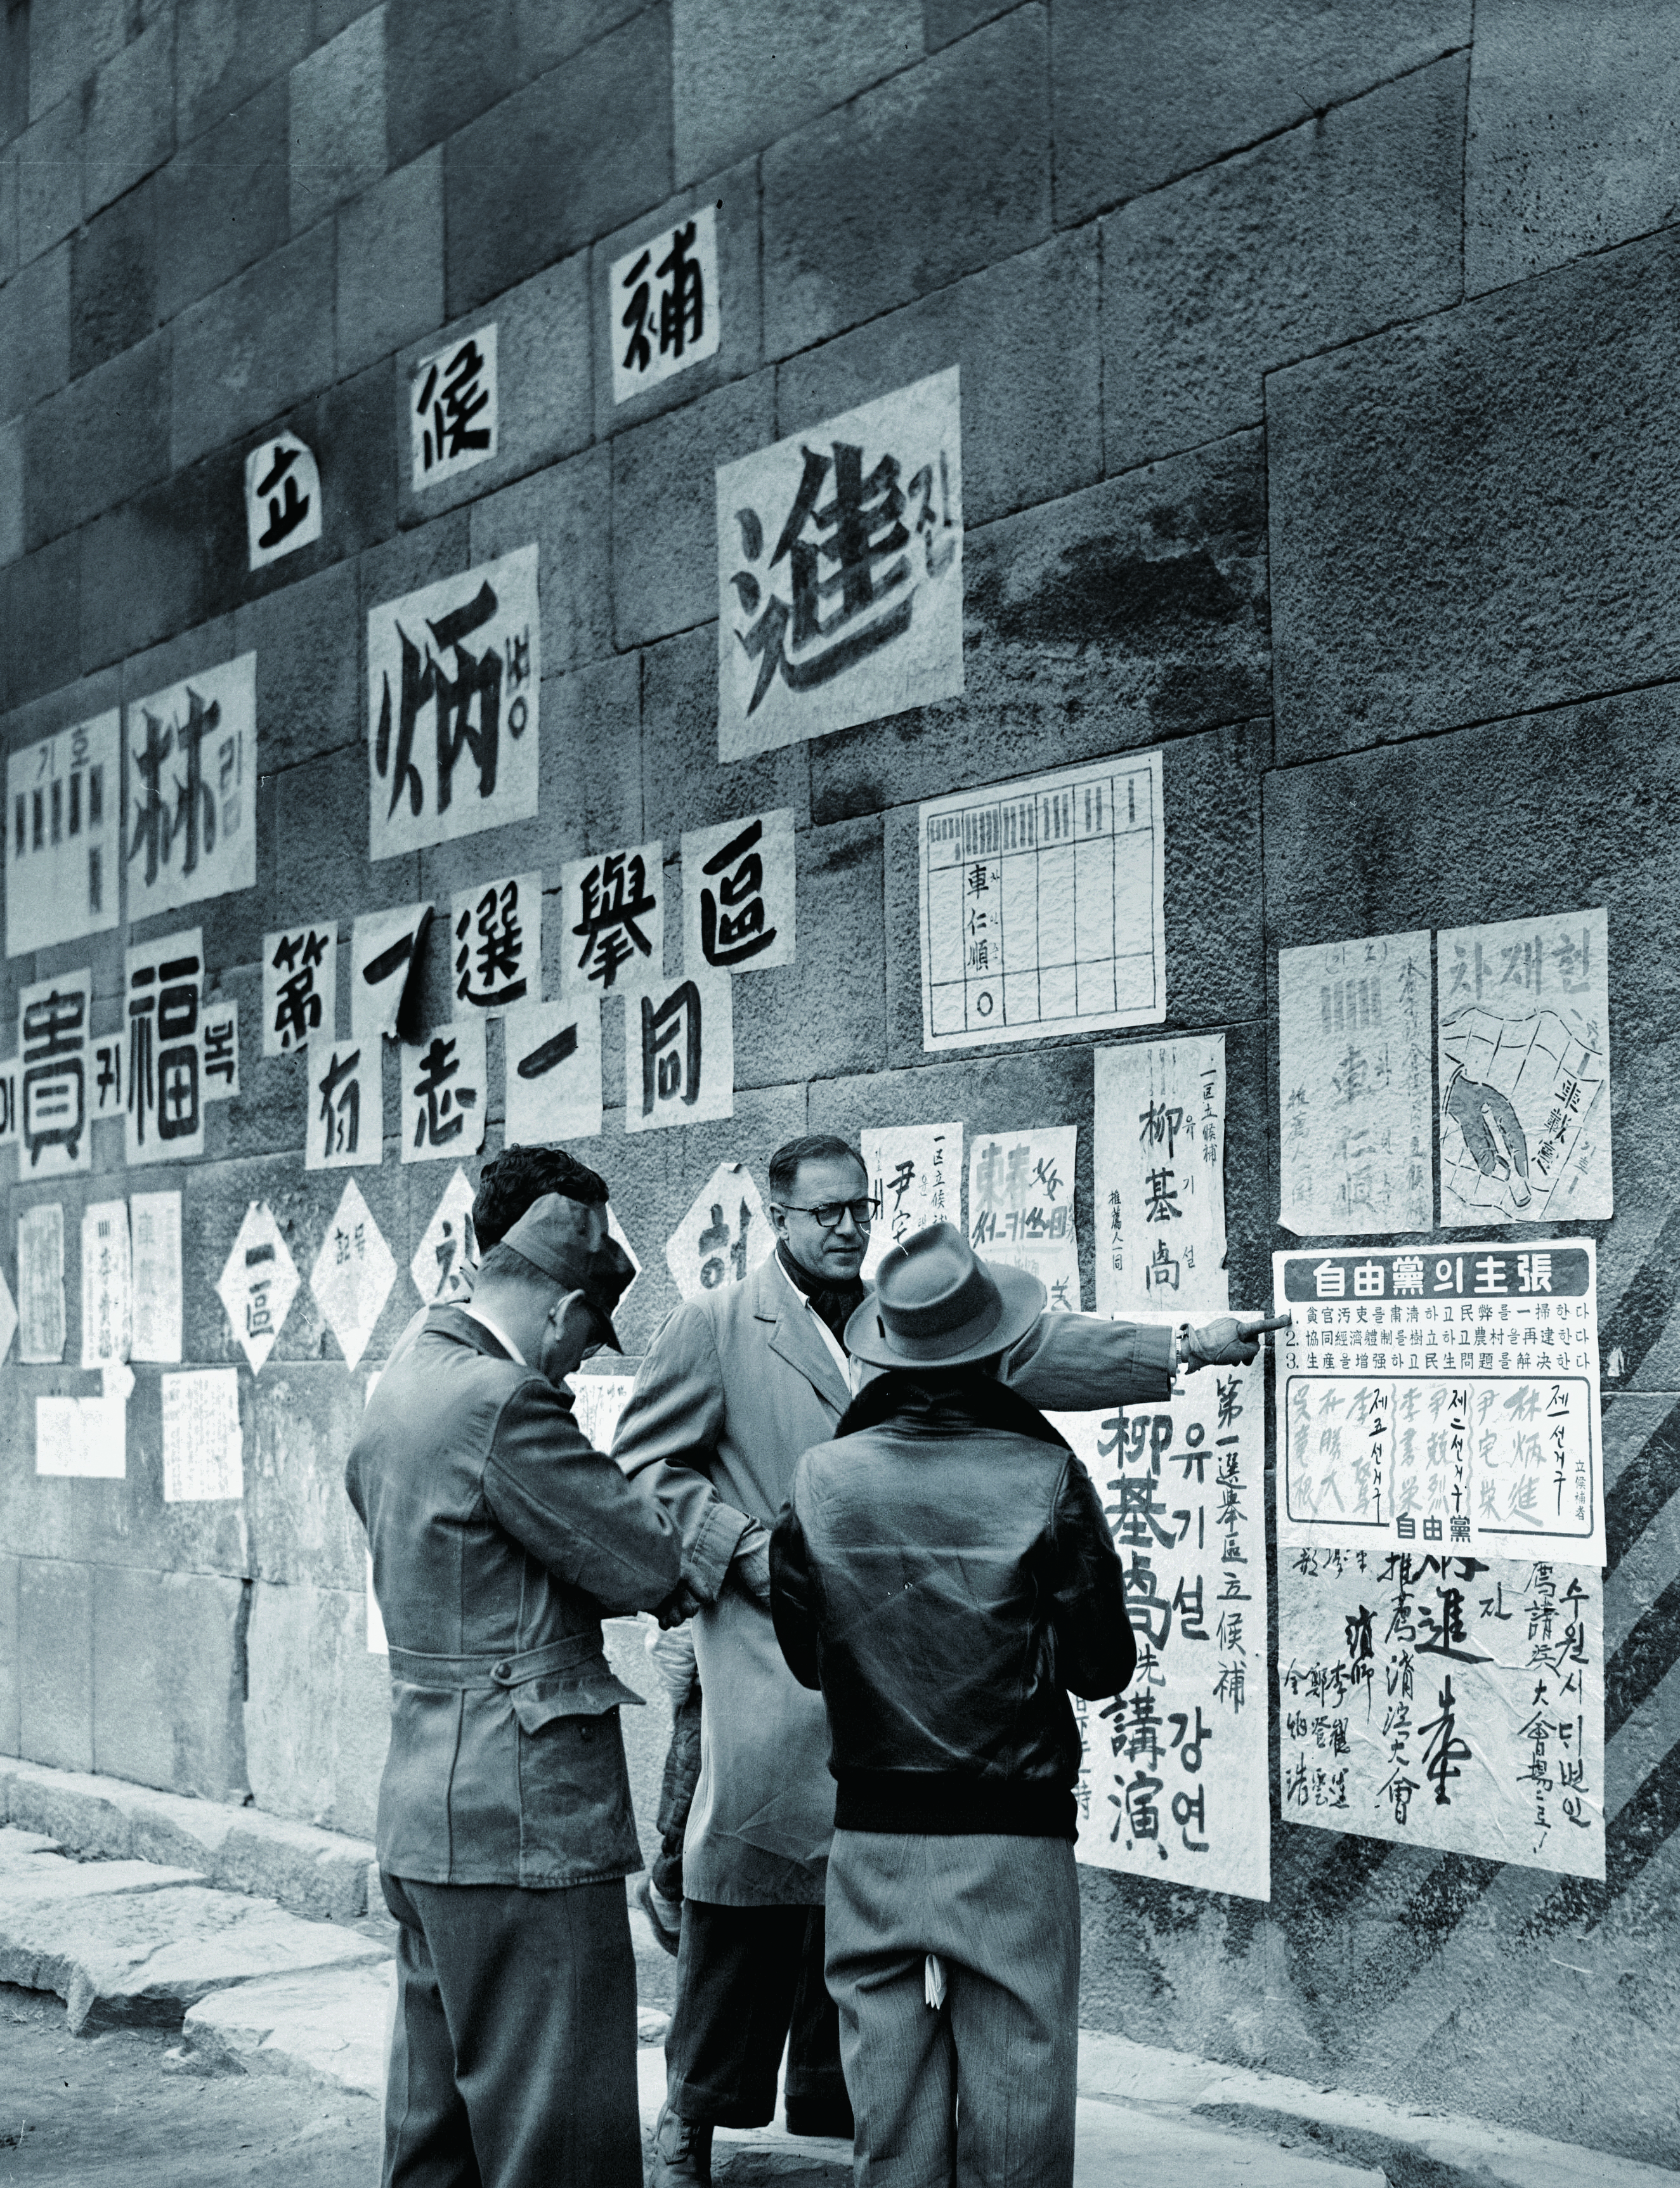 선거감독을 위해 지방을 시찰하는 유엔한국통일부흥위원단(1952)